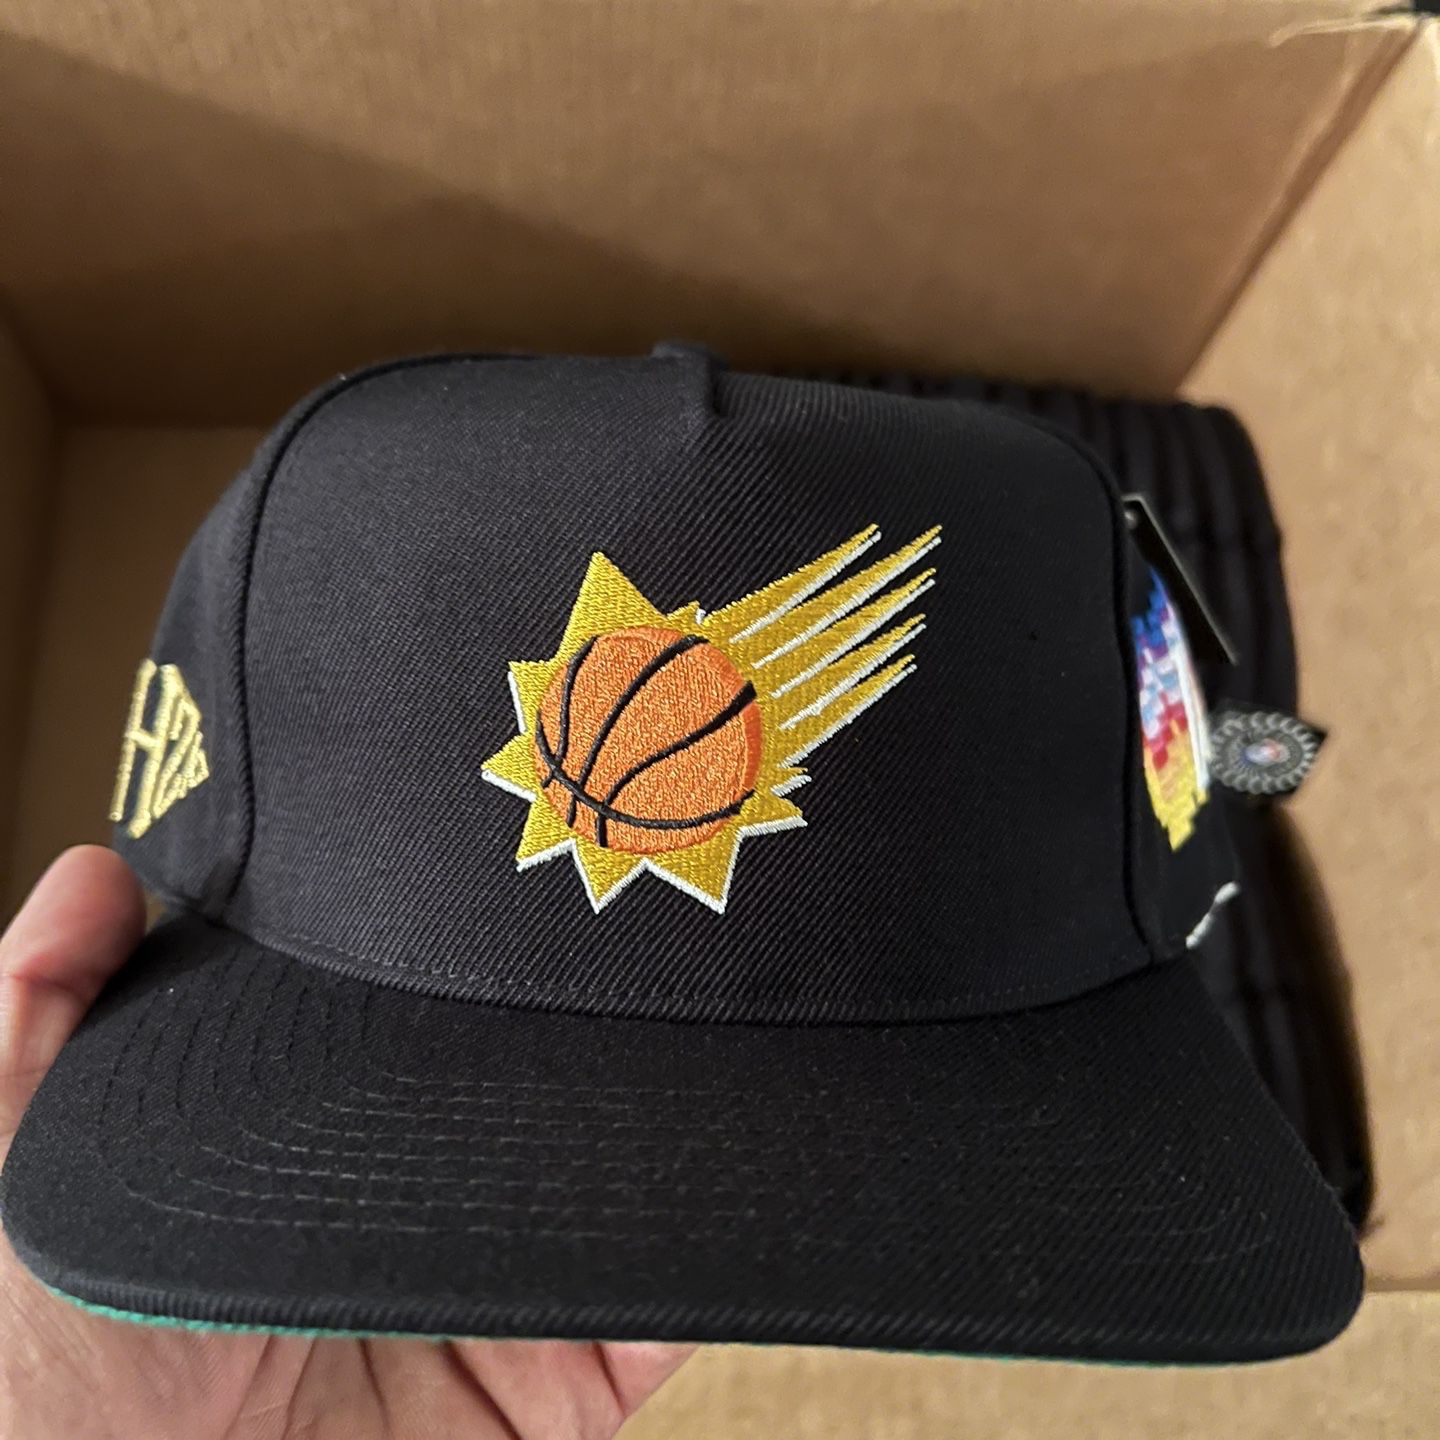 KTHLA Phoenix Suns Snapback for Sale in Scottsdale, AZ - OfferUp